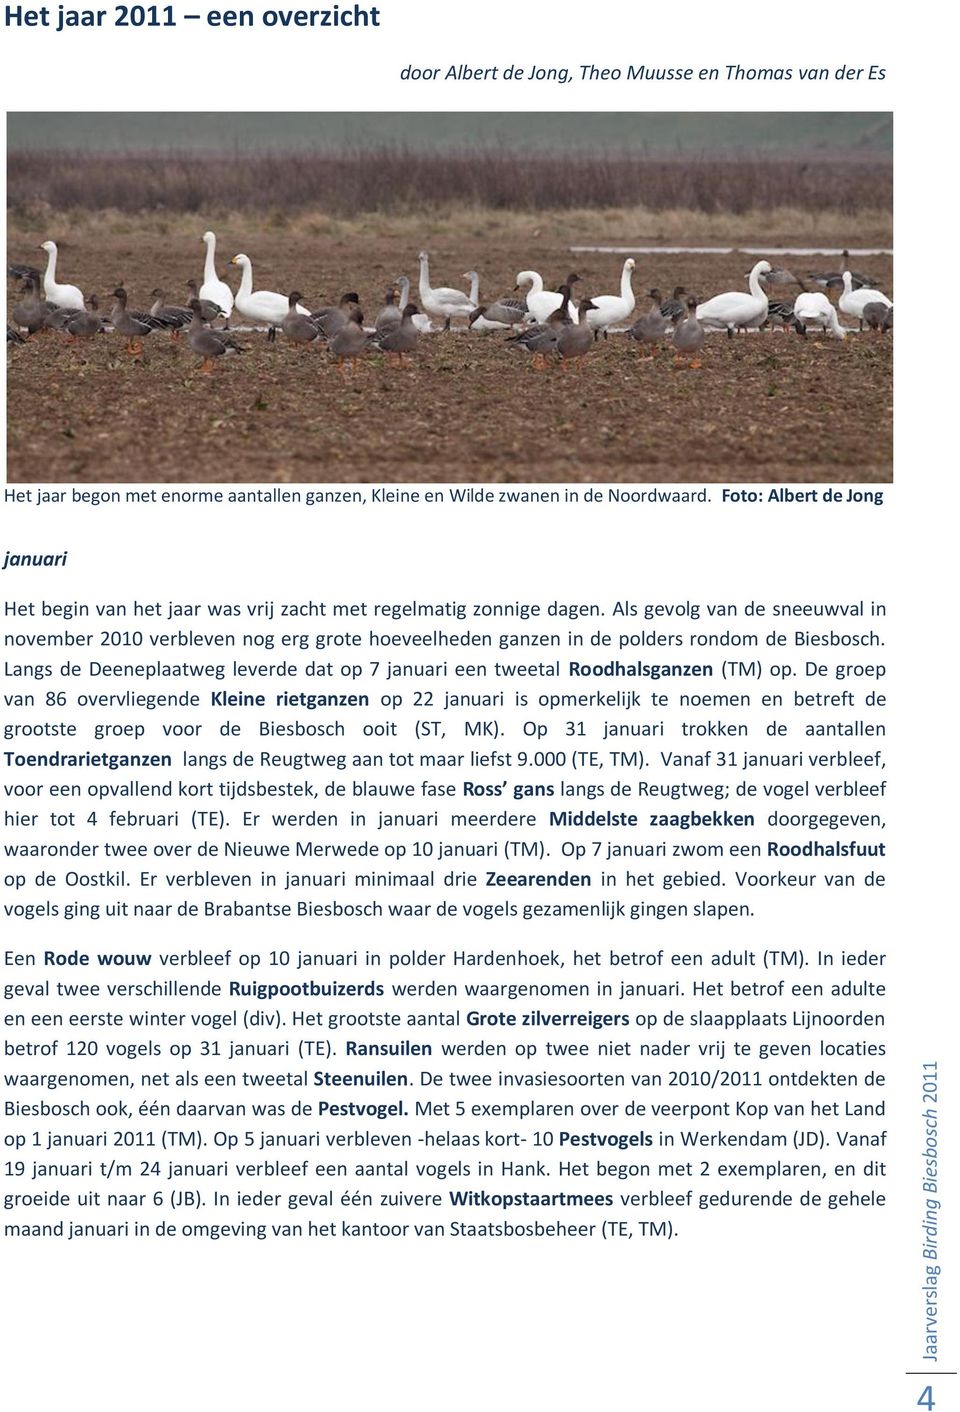 Als gevolg van de sneeuwval in november 2010 verbleven nog erg grote hoeveelheden ganzen in de polders rondom de Biesbosch.